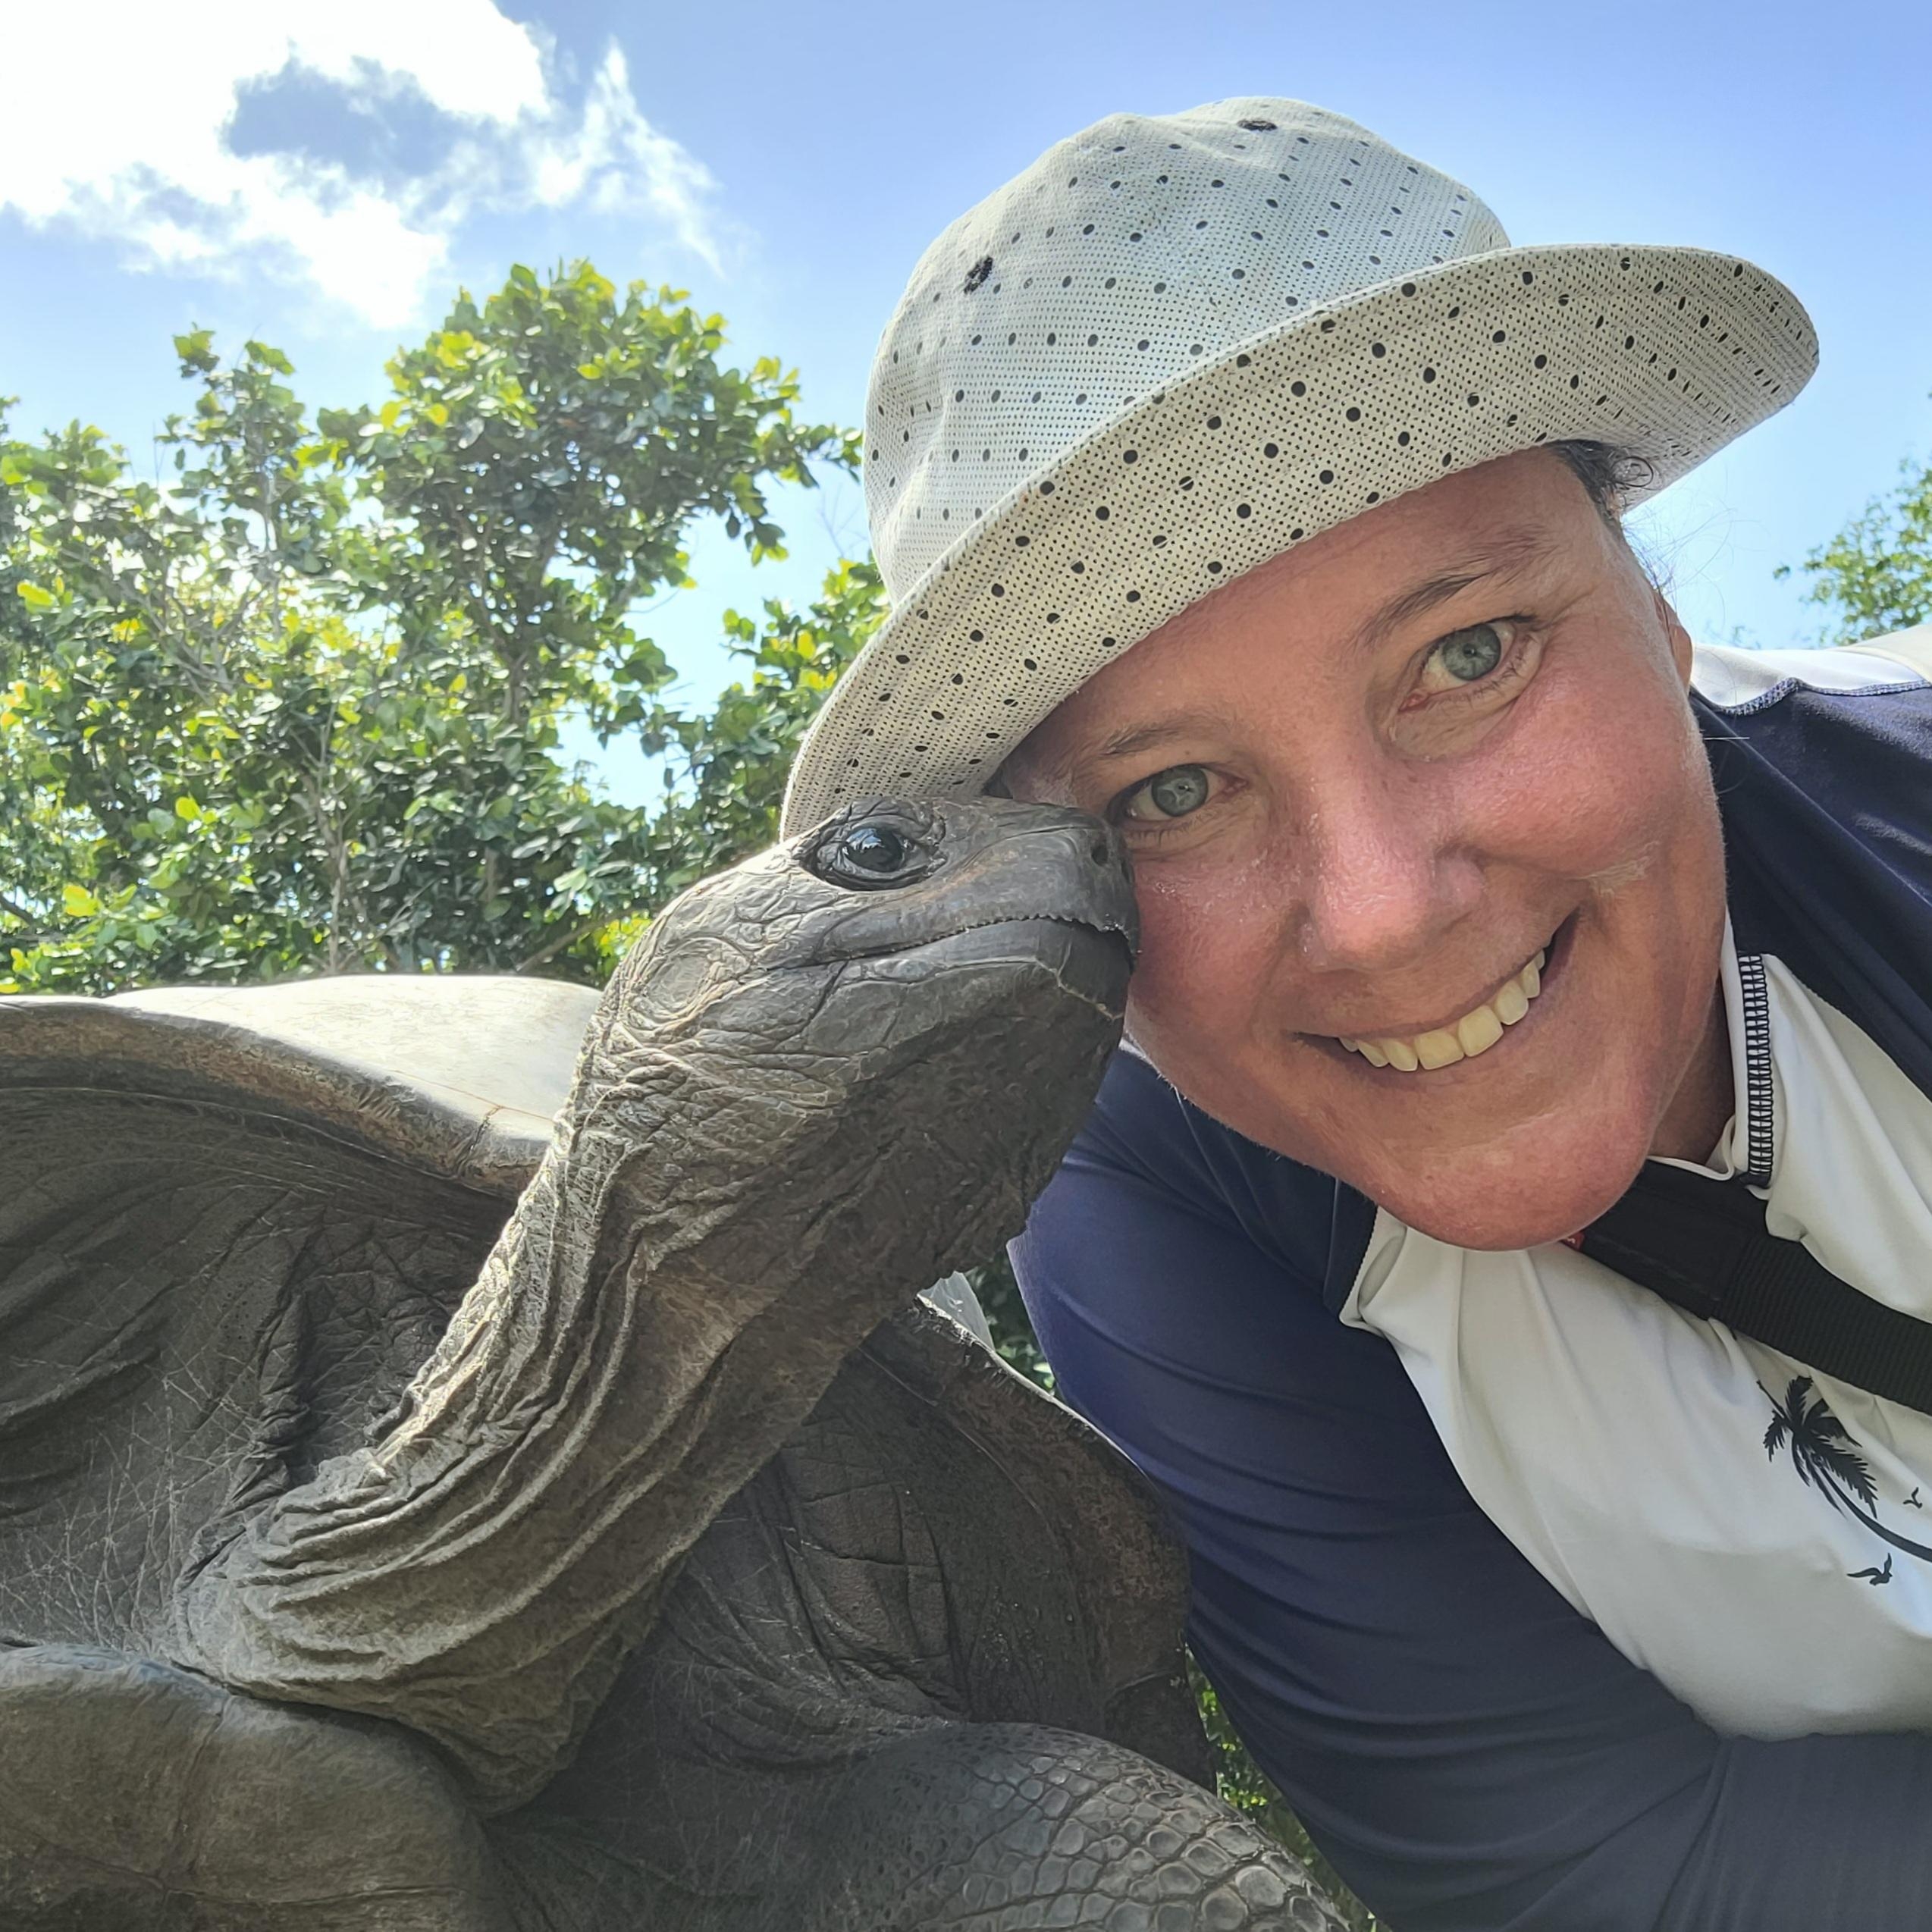 Man kann überall auf der Welt Freunde finden ♡

#turtle #Seychellen #friendship #schildkröte #reisenistmeinemedizin